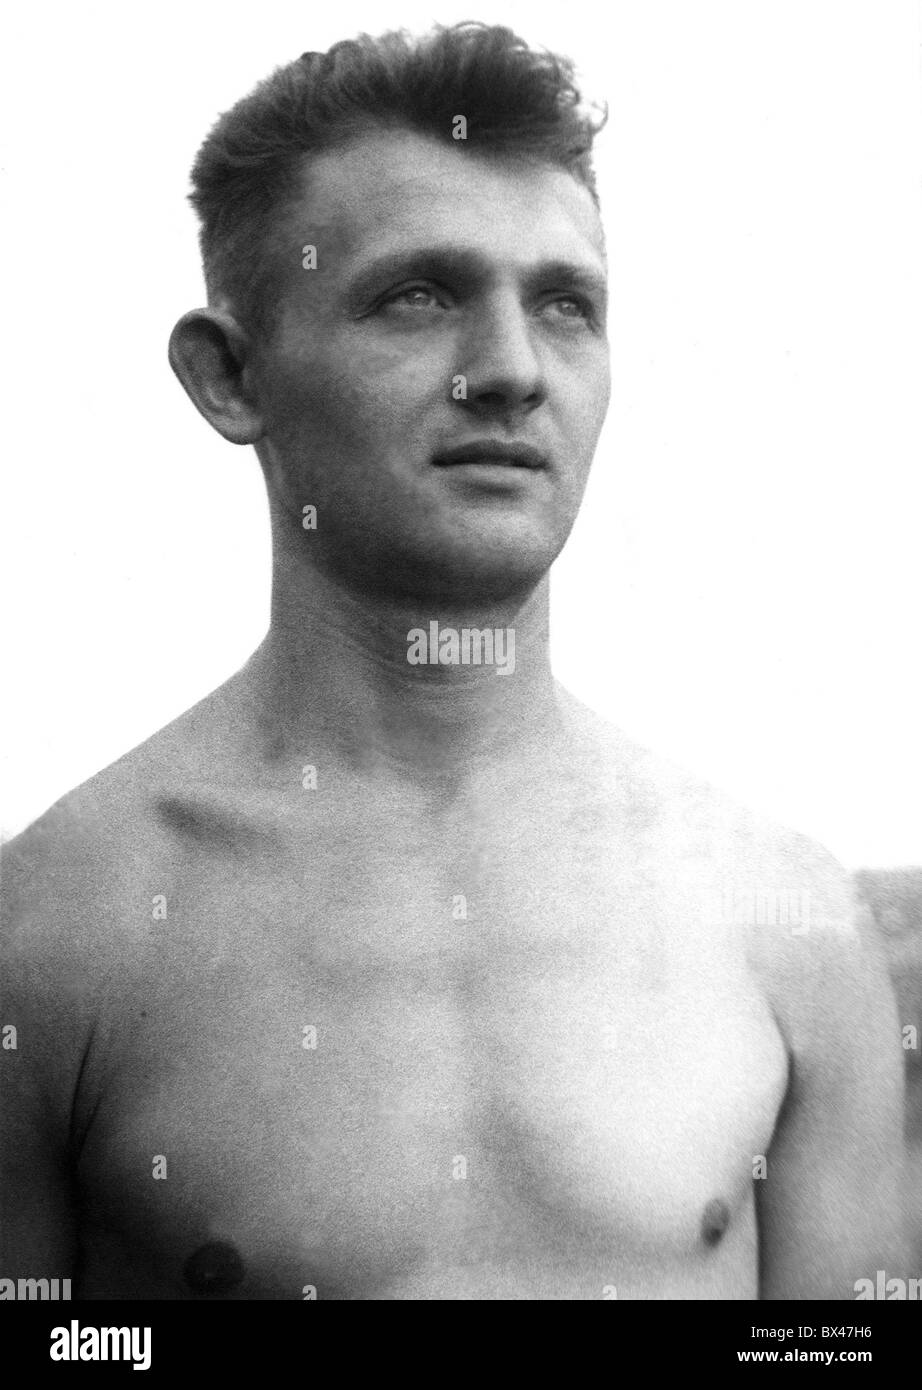 Czechoslovak wrestler Jaroslav Sysel. Stock Photo - czechoslovak-wrestler-jaroslav-sysel-BX47H6